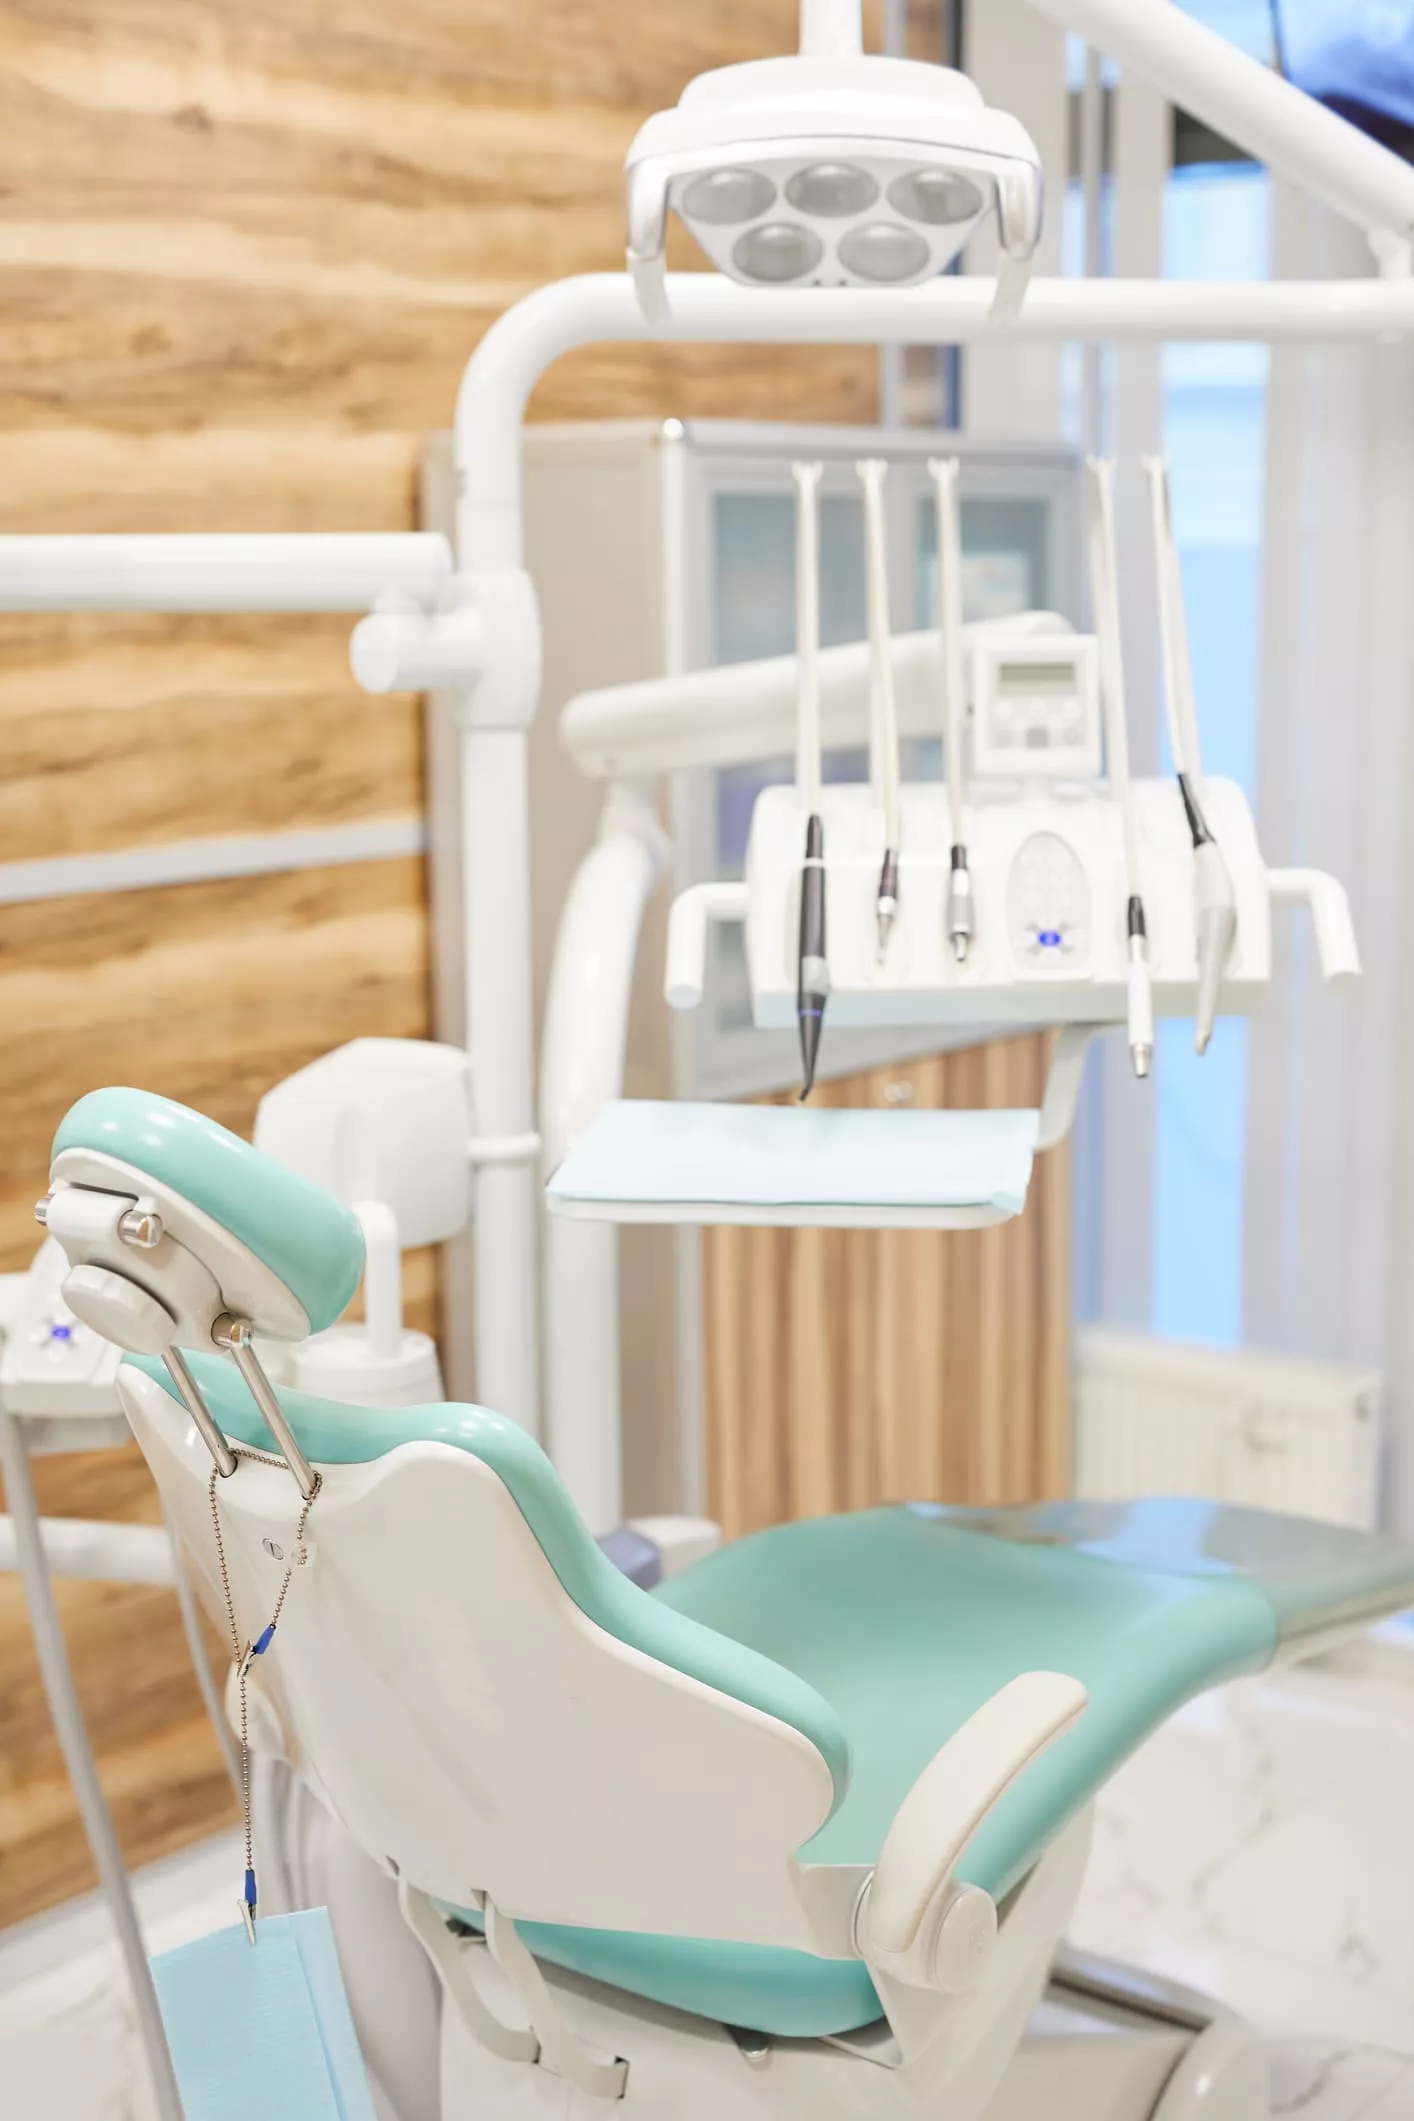 Le cabinet dentaire : une zone à risque pour la propagation des virus et bactéries